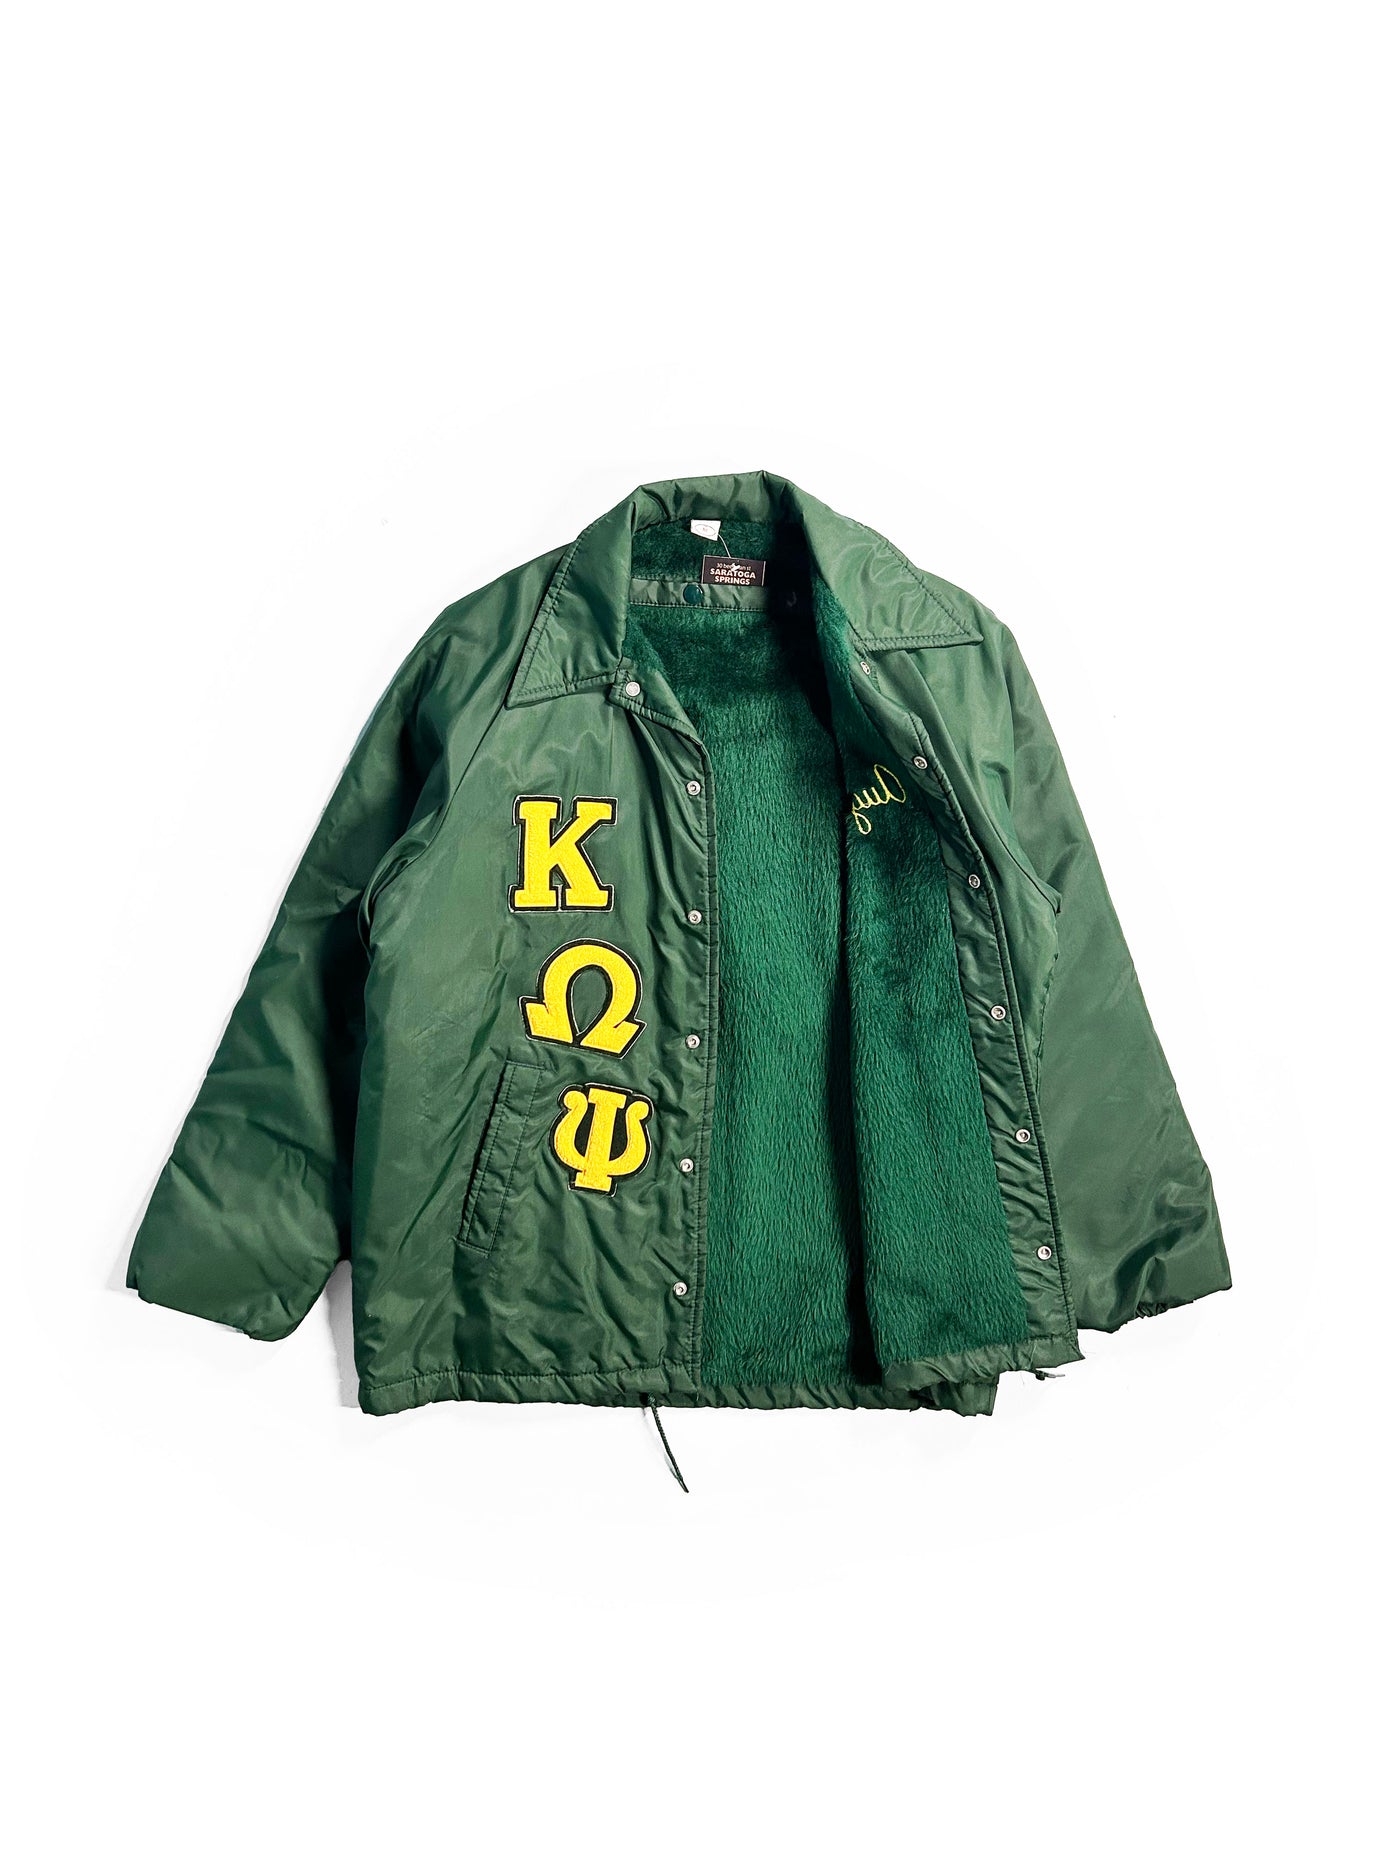 Vintage 80s Kappa Omega Lined Jacket